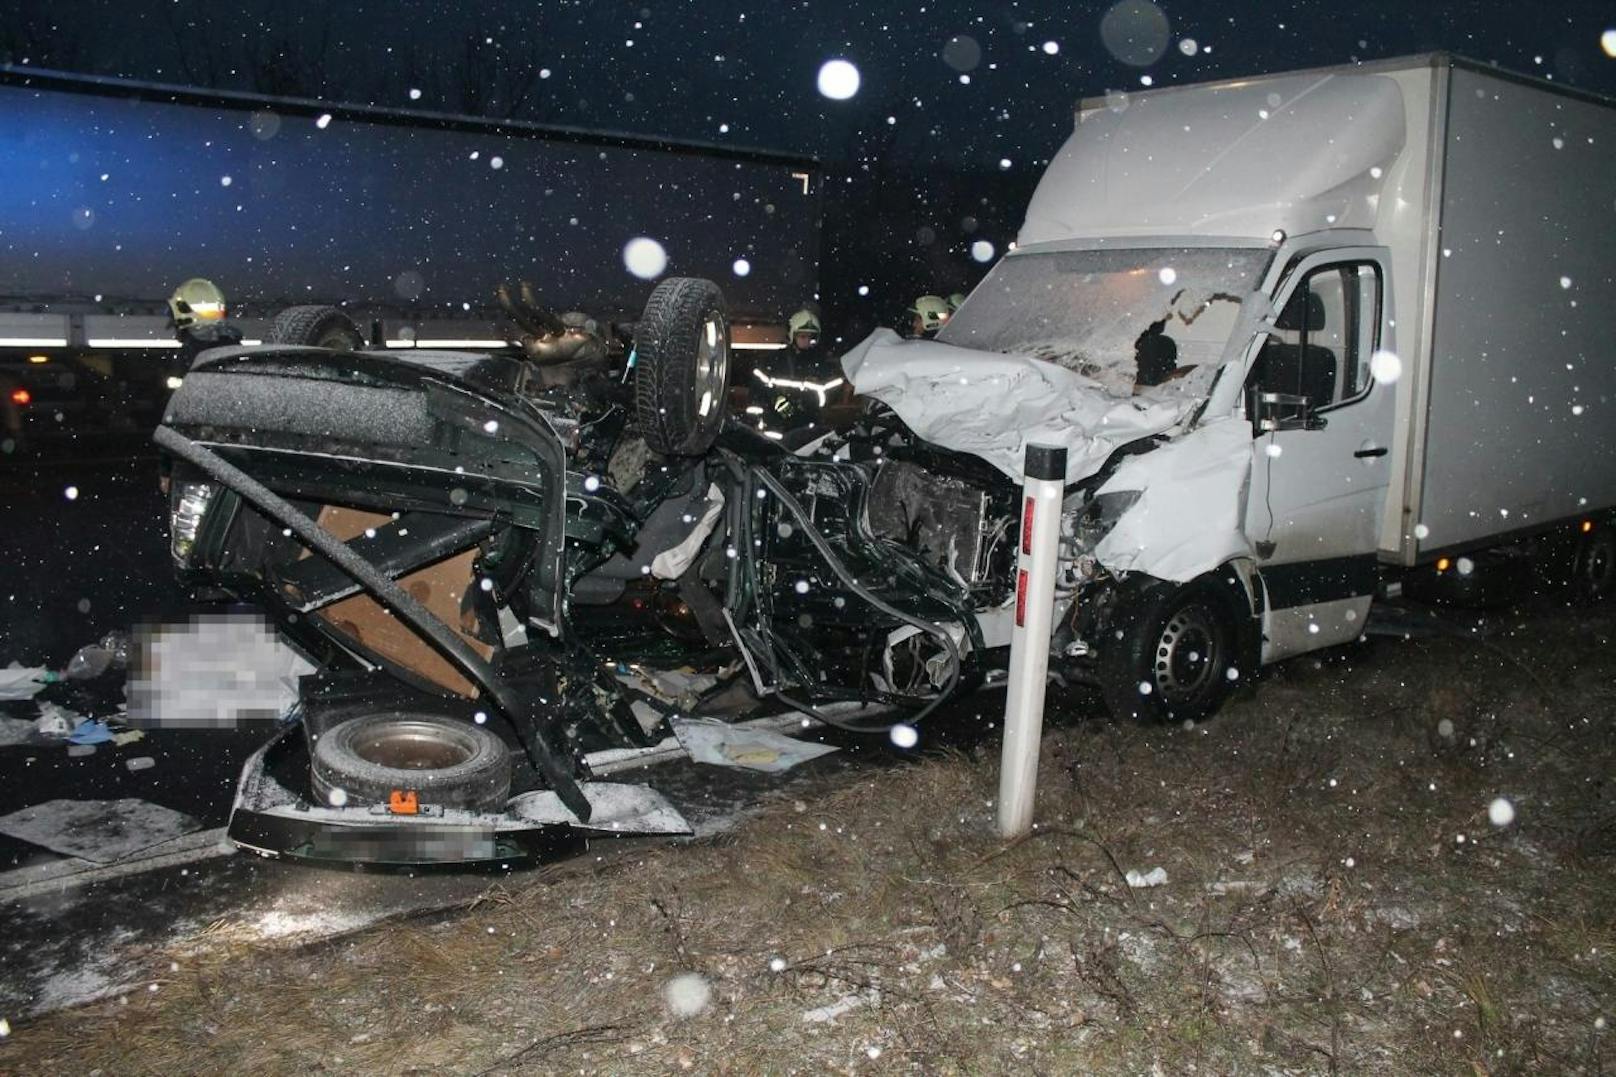 Tödlicher Verkehrsunfall am Mittwoch im Schneetreiben auf der A2 bei Wöllersdorf.Eine Pkw-Lenkerin verlor auf der glatten Fahrbahn die Kontrolle über ihren Wagen, kam ins Schleudern, das Auto überschlug sich. Ein nachkommender Lkw-Lenker konnte aber nicht mehr rechtzeitig bremsen und erwischte die junge Frau frontal.